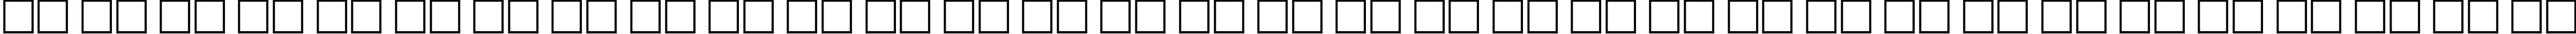 Пример написания русского алфавита шрифтом BauhausCTT Bold